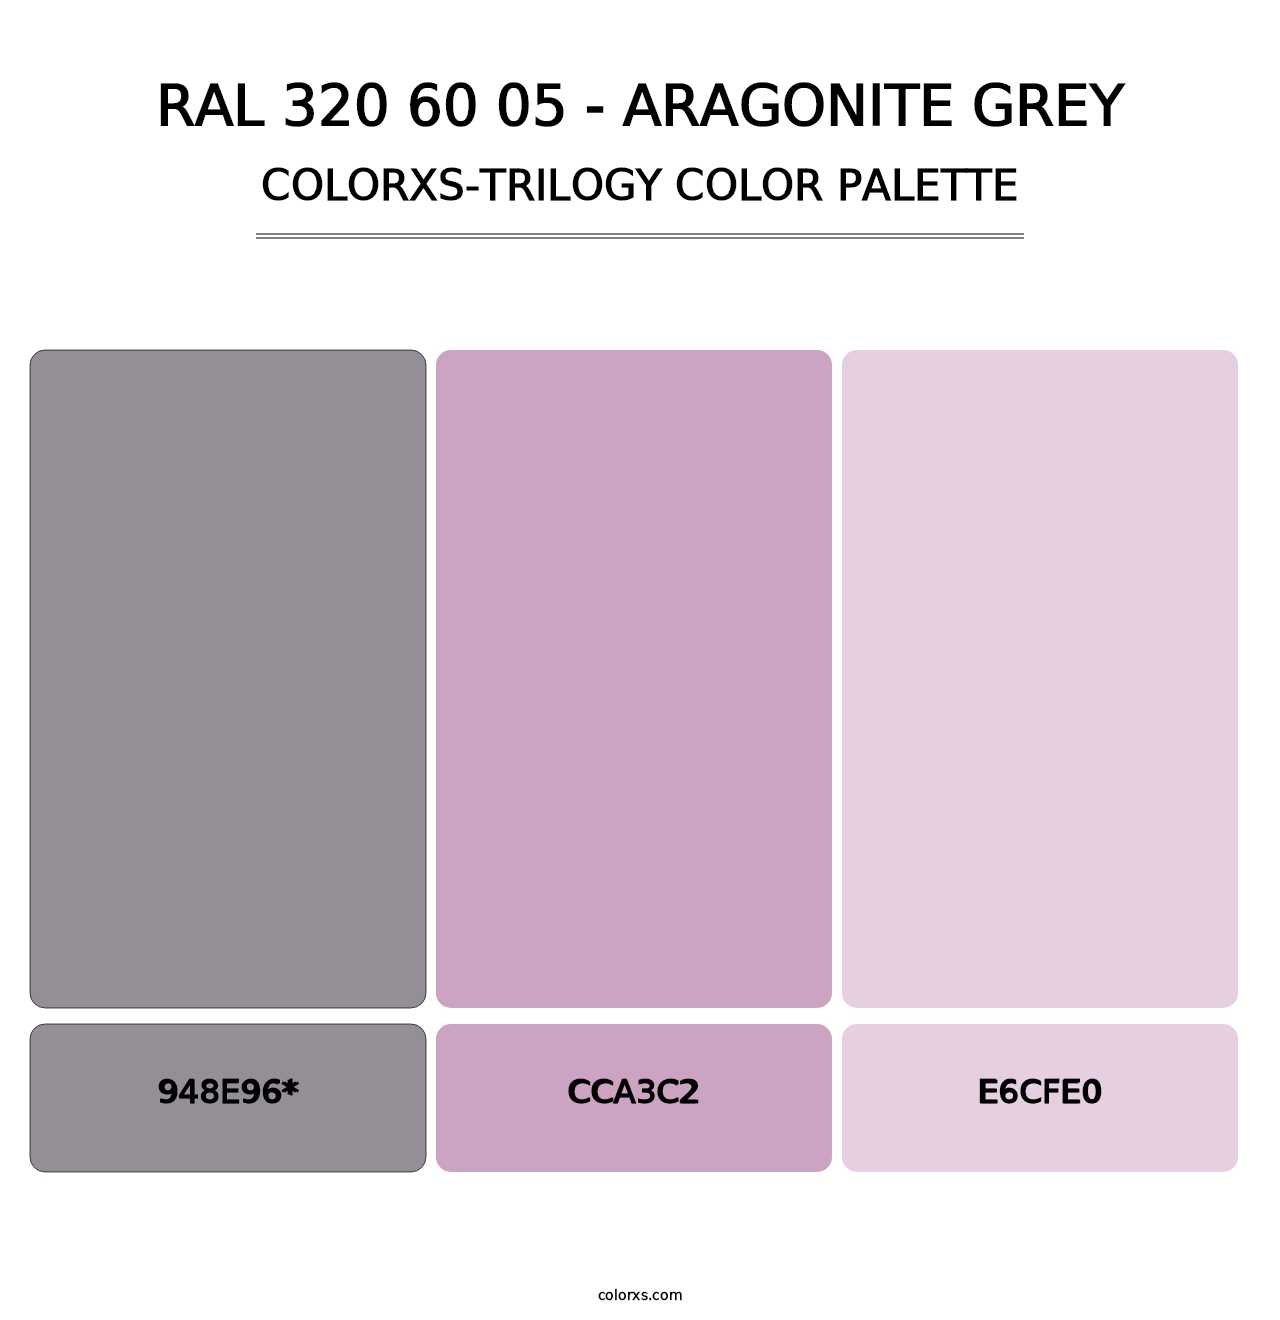 RAL 320 60 05 - Aragonite Grey - Colorxs Trilogy Palette